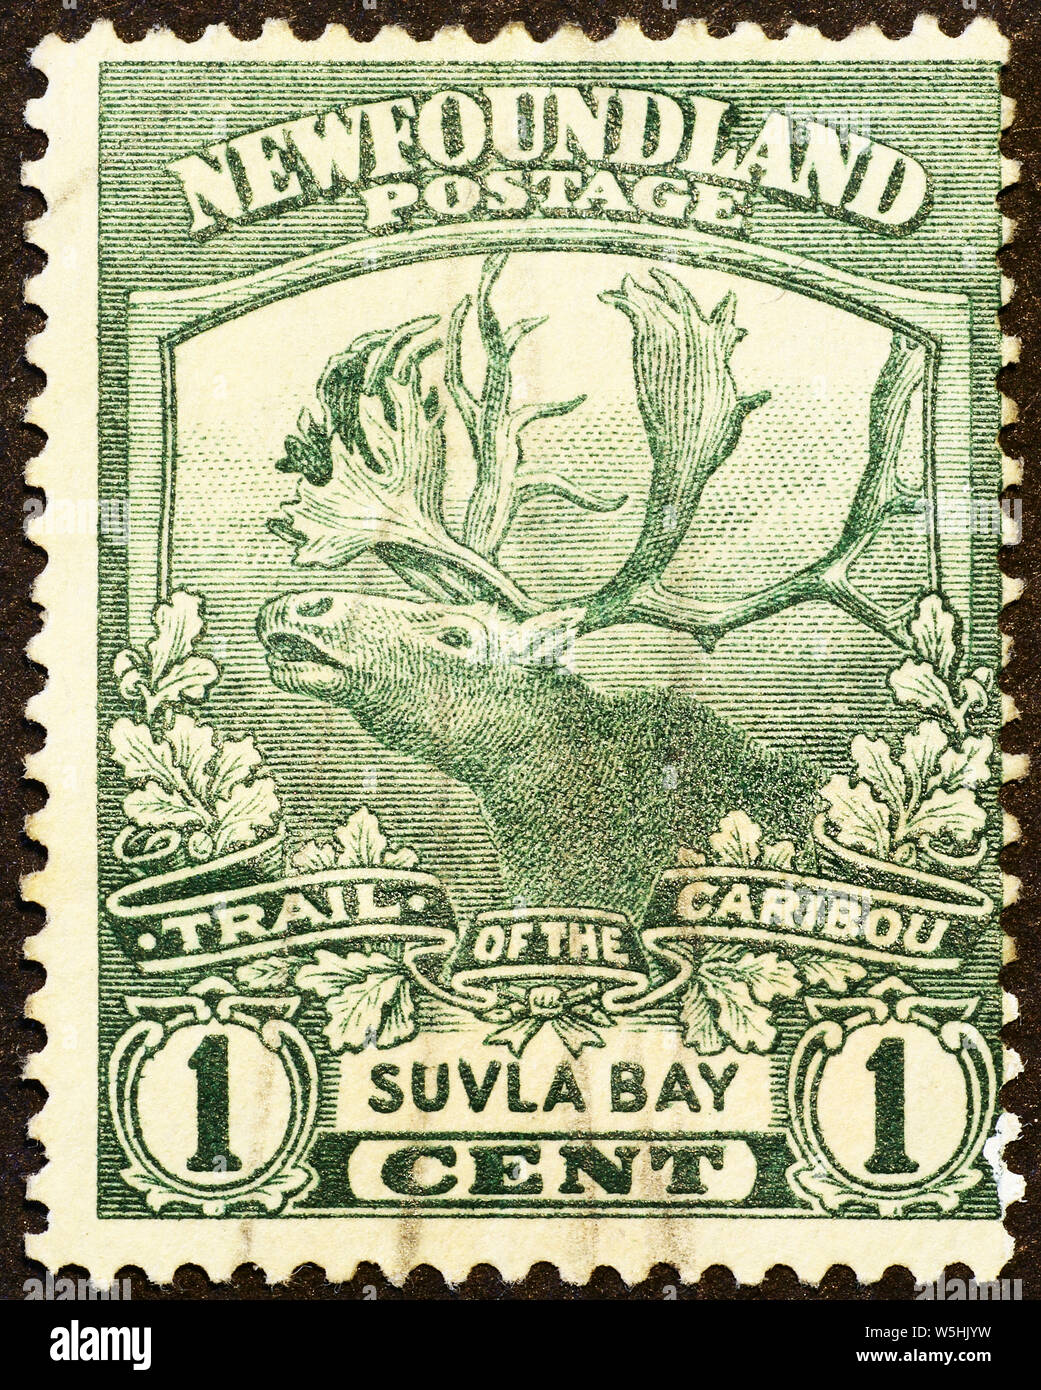 Le caribou des bois sur de très vieux timbres-poste de Terre-Neuve Banque D'Images